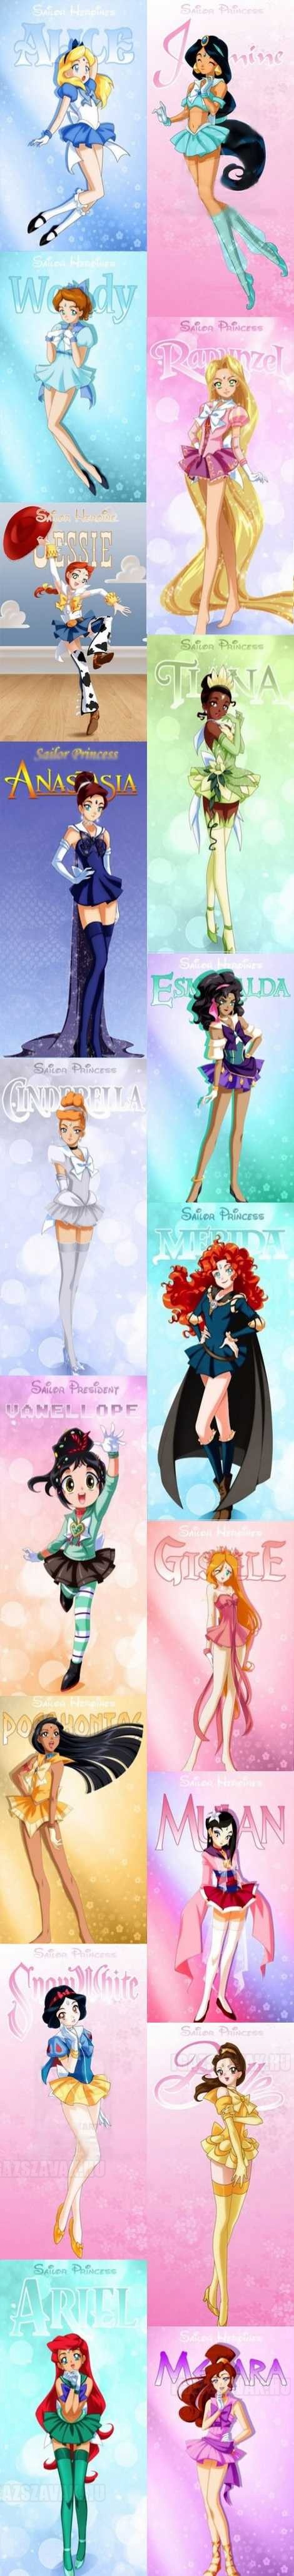 disney mesék hősnői Sailor Moon karakterként újraképzelve